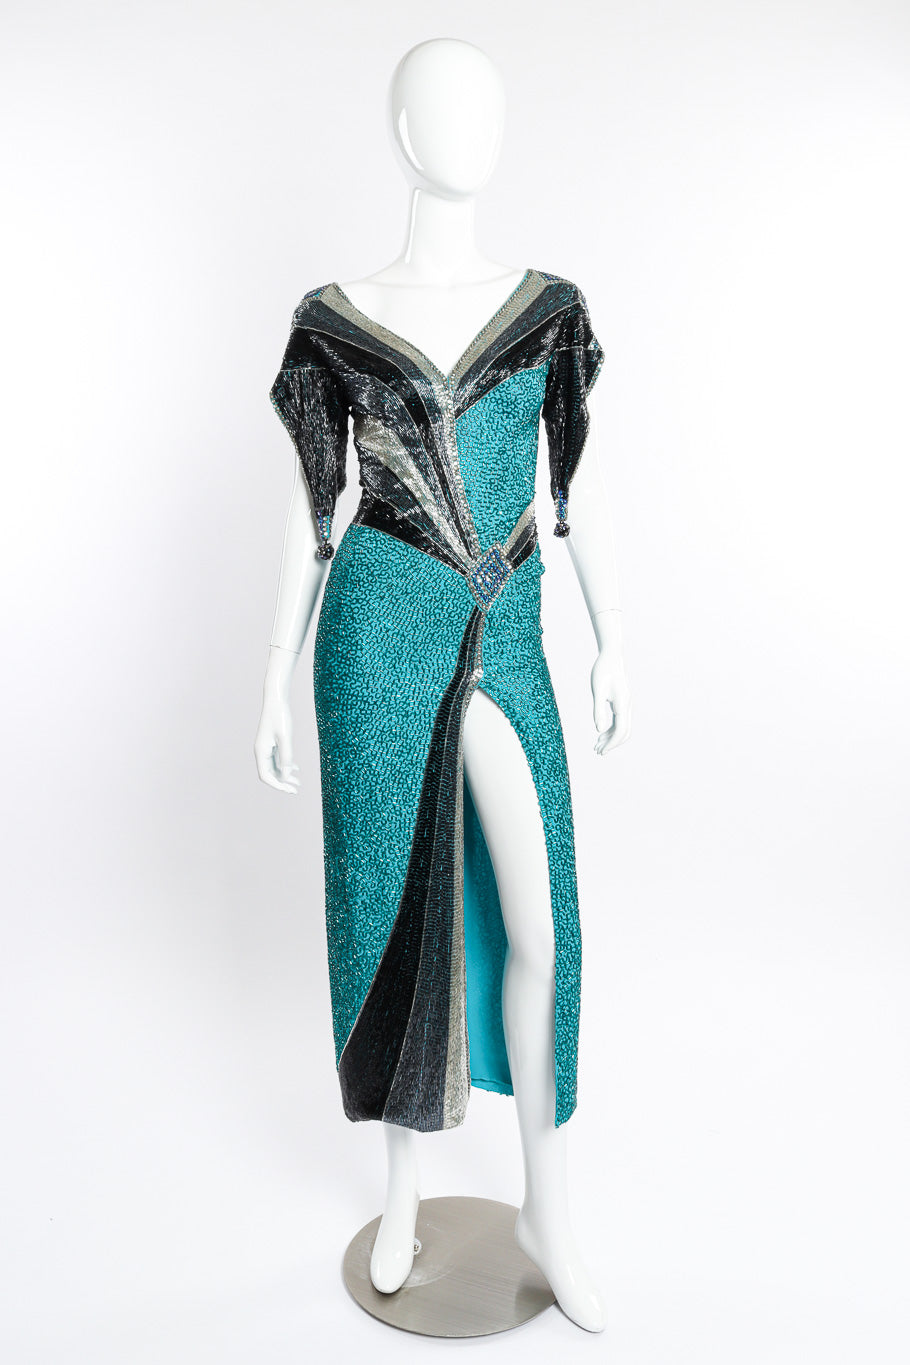 Plunge Back Beaded Deco Dress by Lauren Nicole on mannequin @recessla